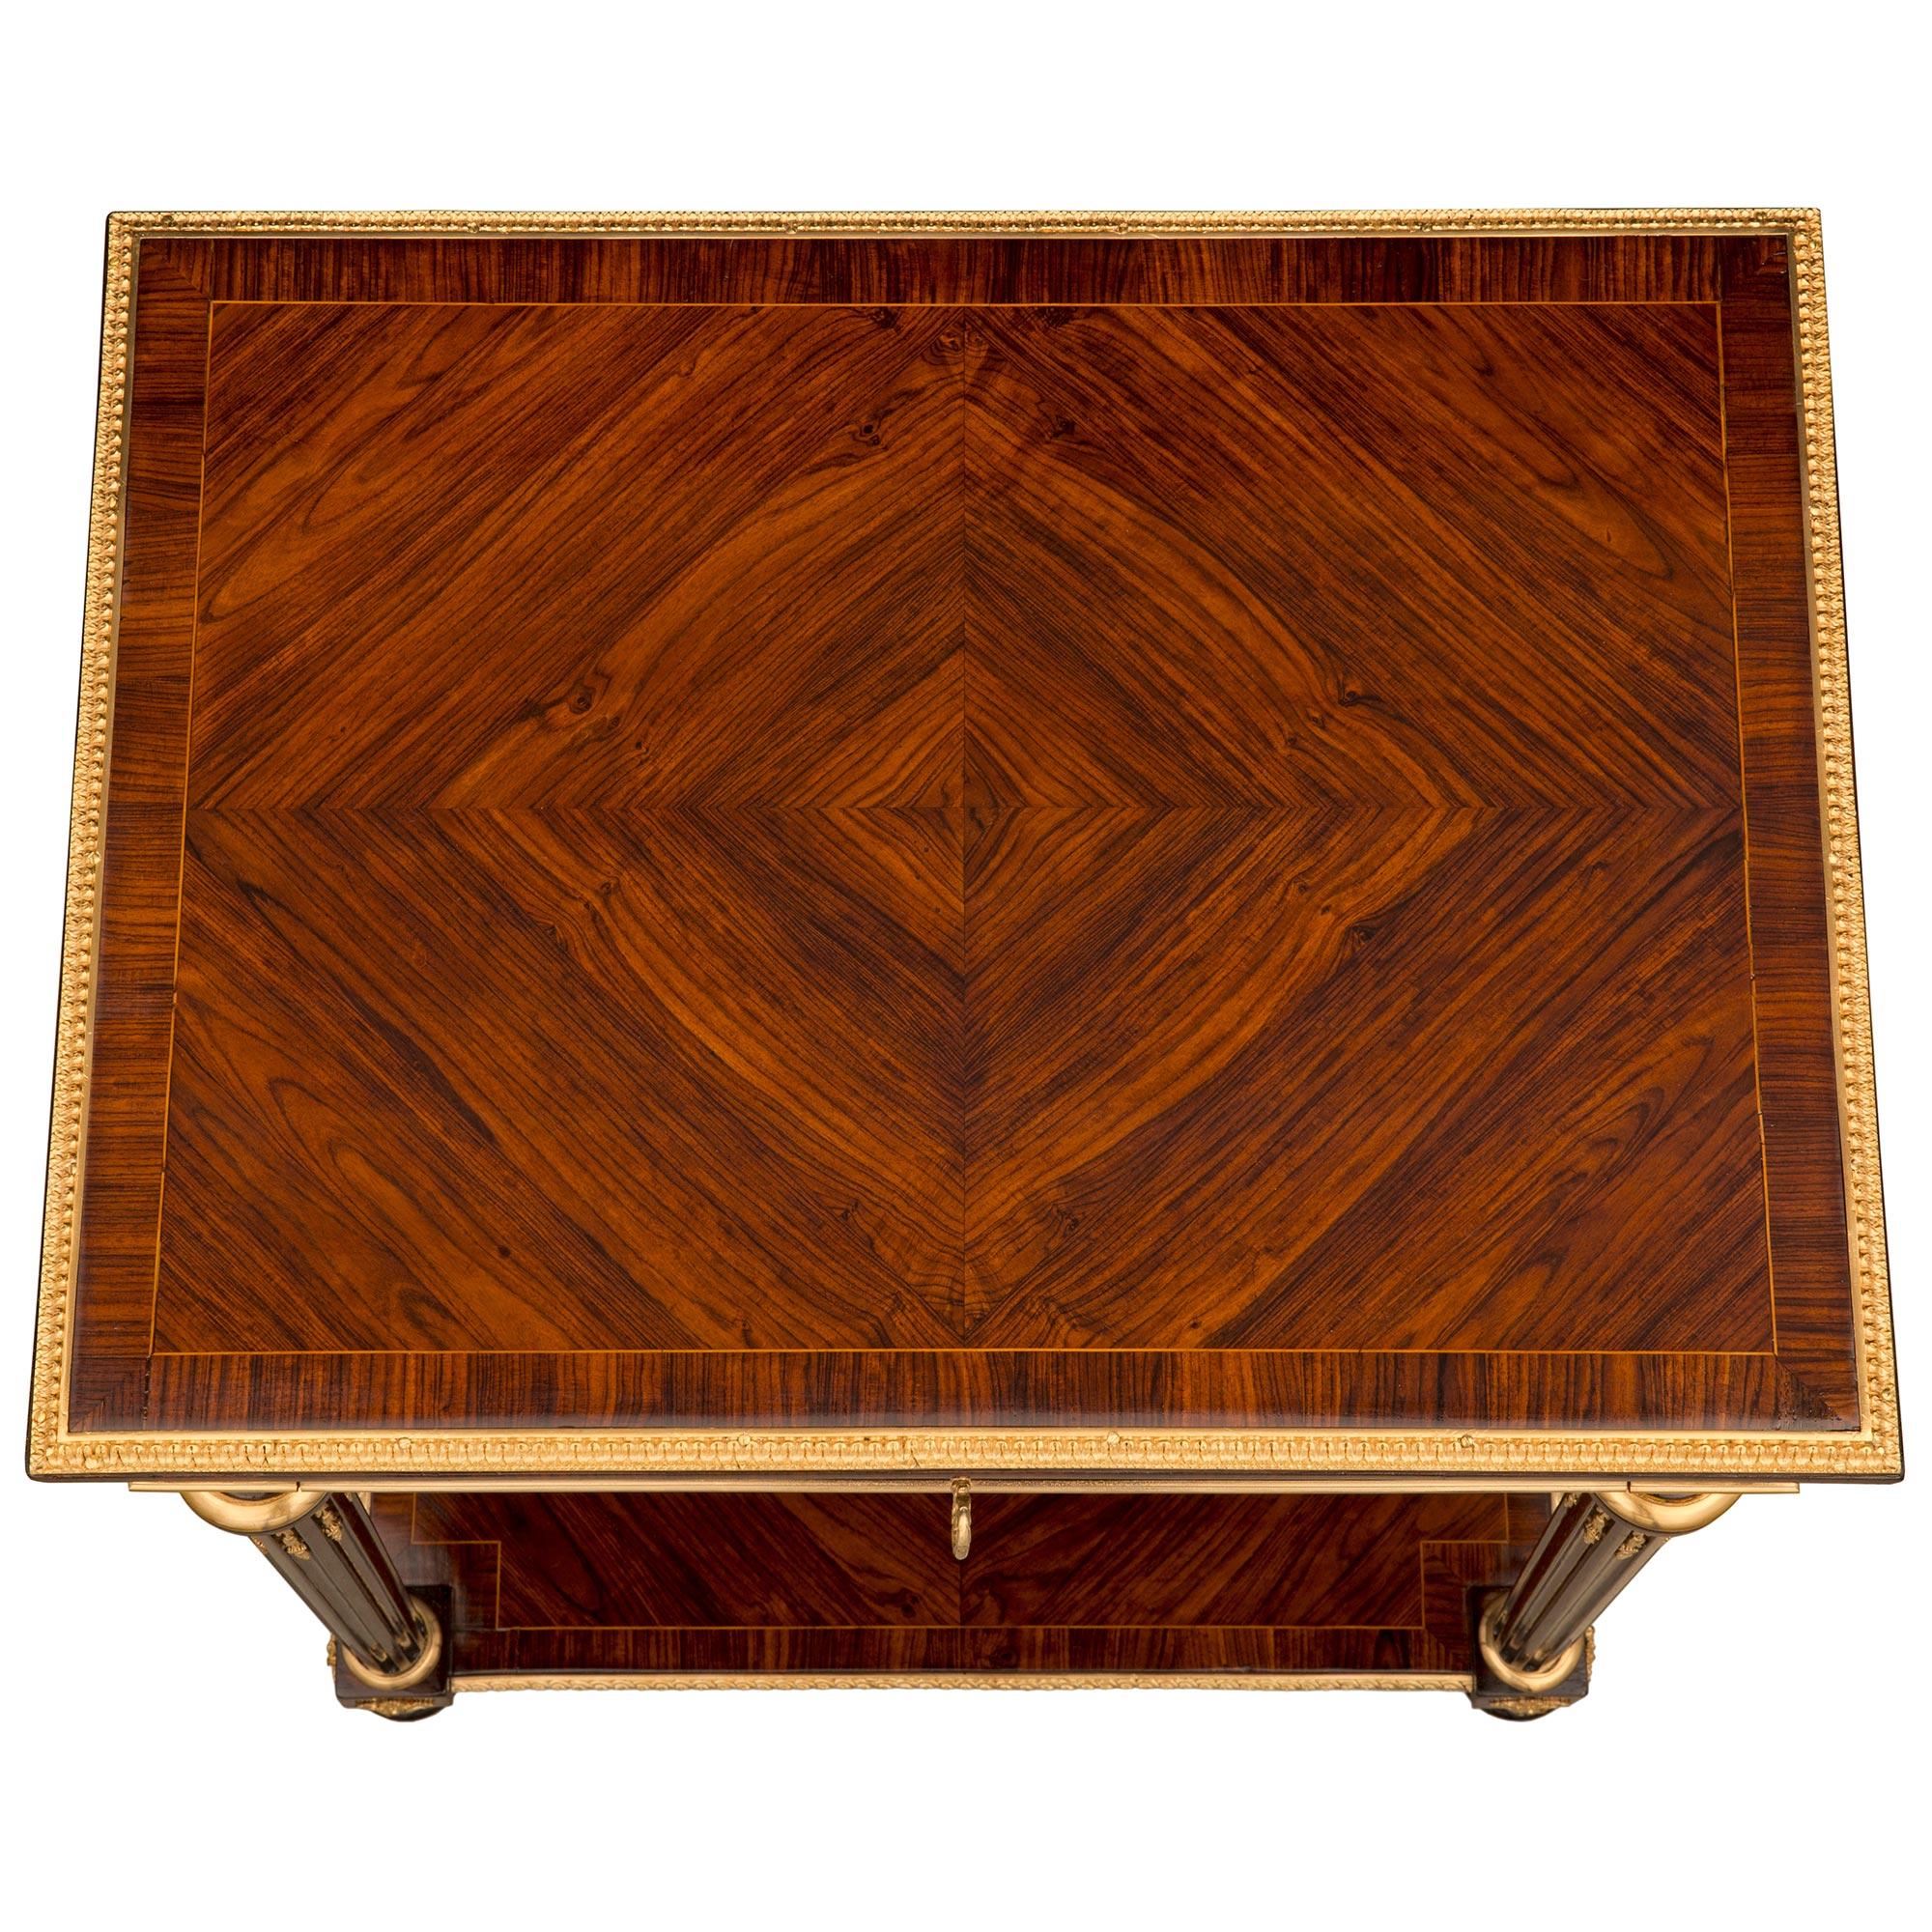 Superbe table d'appoint de très haute qualité, de style Louis XVI, en acajou, bois de rose et bronze doré, attribuée à Sormani. La table est surélevée par d'élégants pieds en forme de topie avec des sabots en bronze doré finement ajustés et